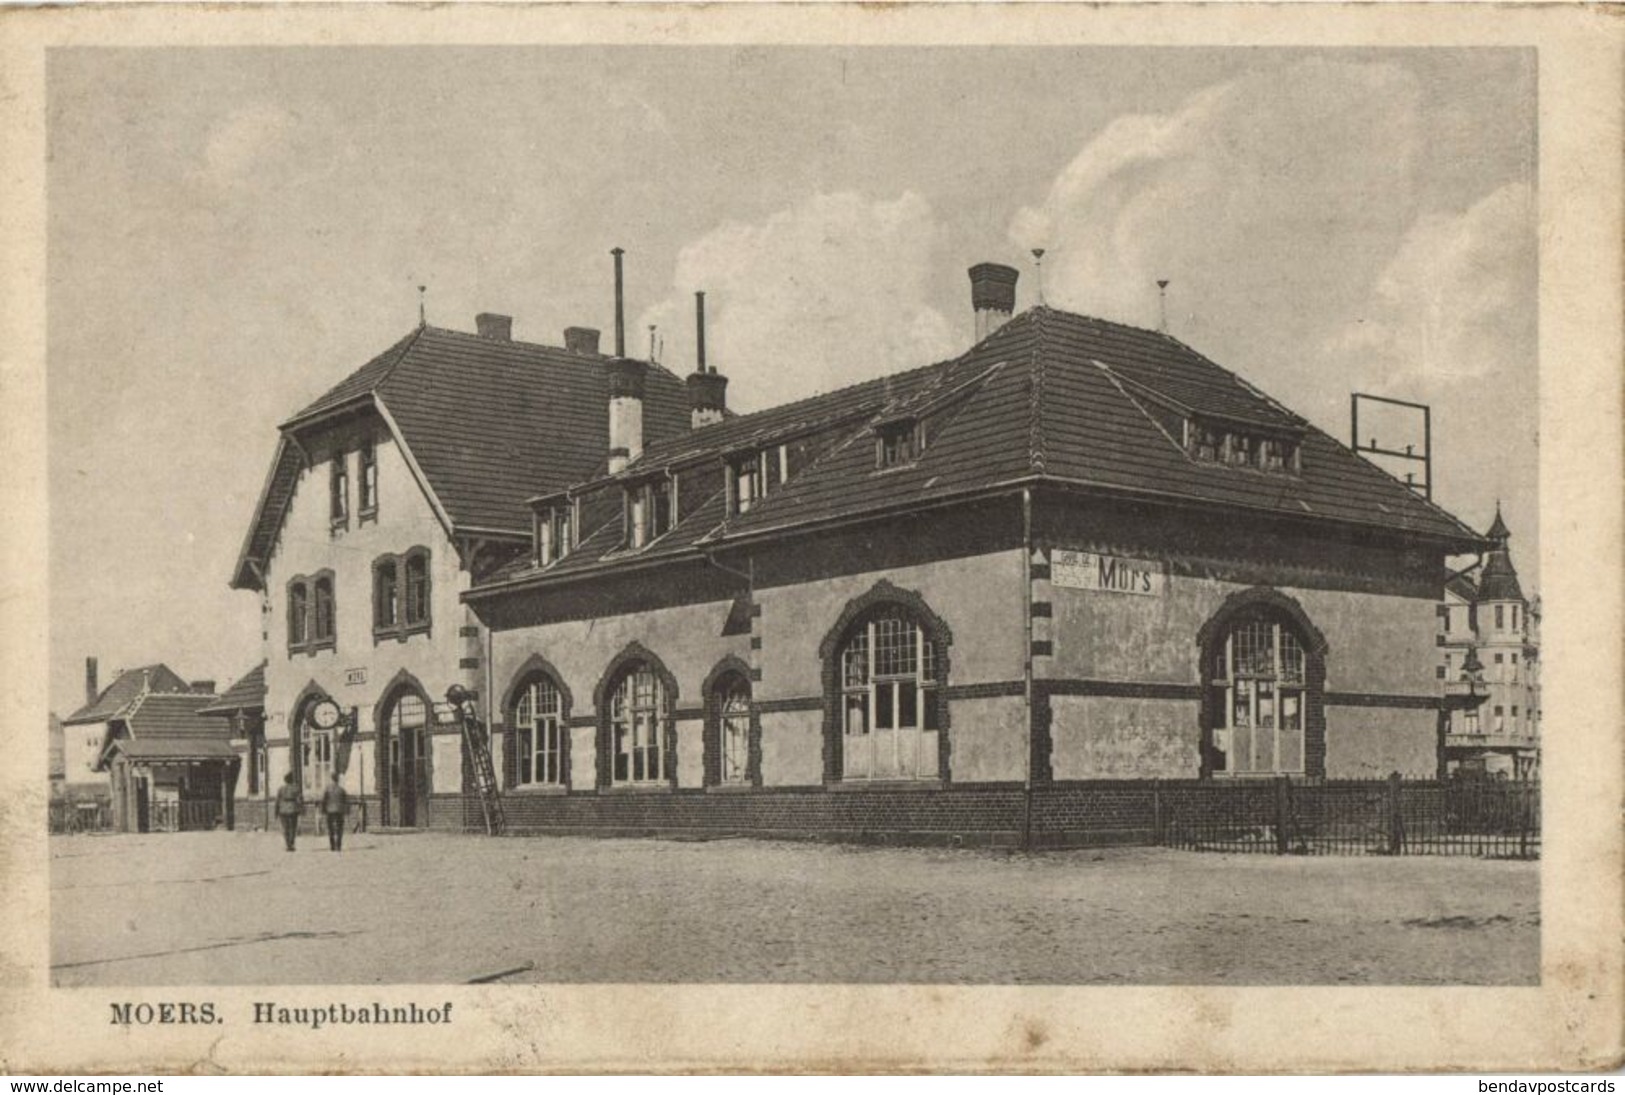 MOERS Am Rhein, Hauptbahnhof (1920s) AK - Moers